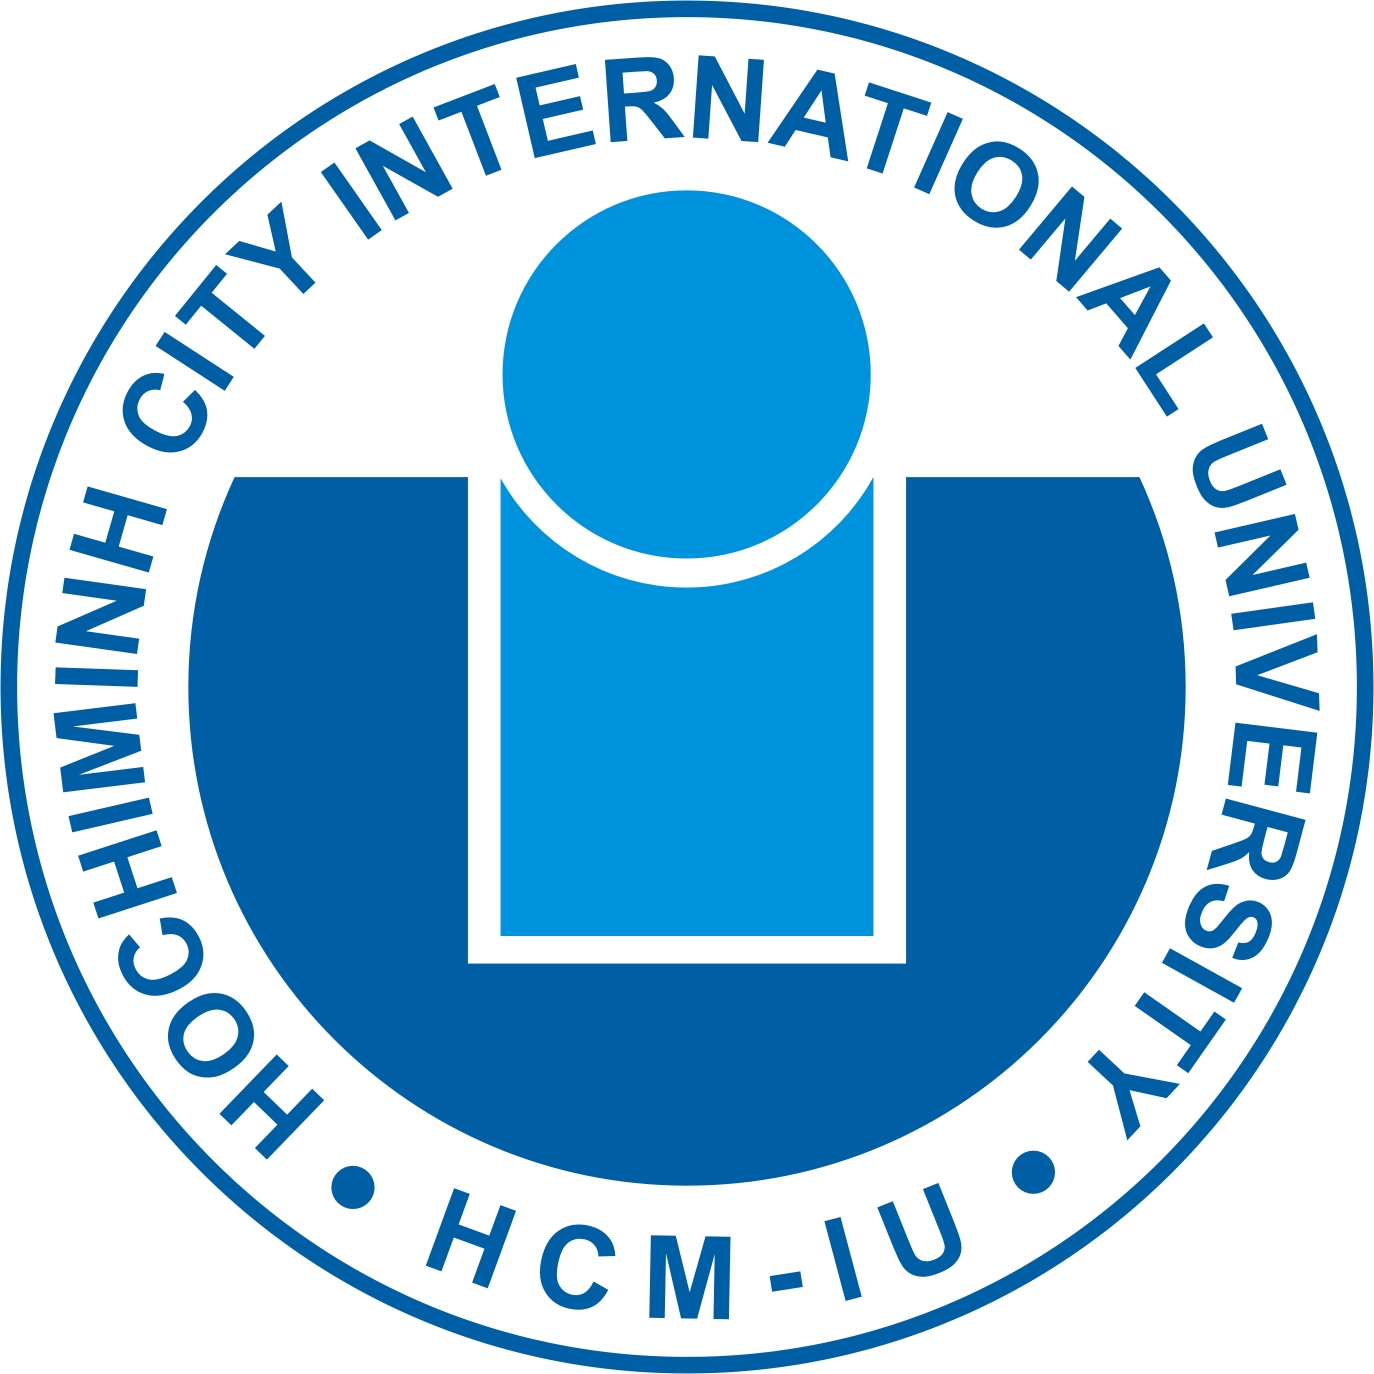 Trường Đại học Quốc tế - Hồ Chí Minh (HCMIU)